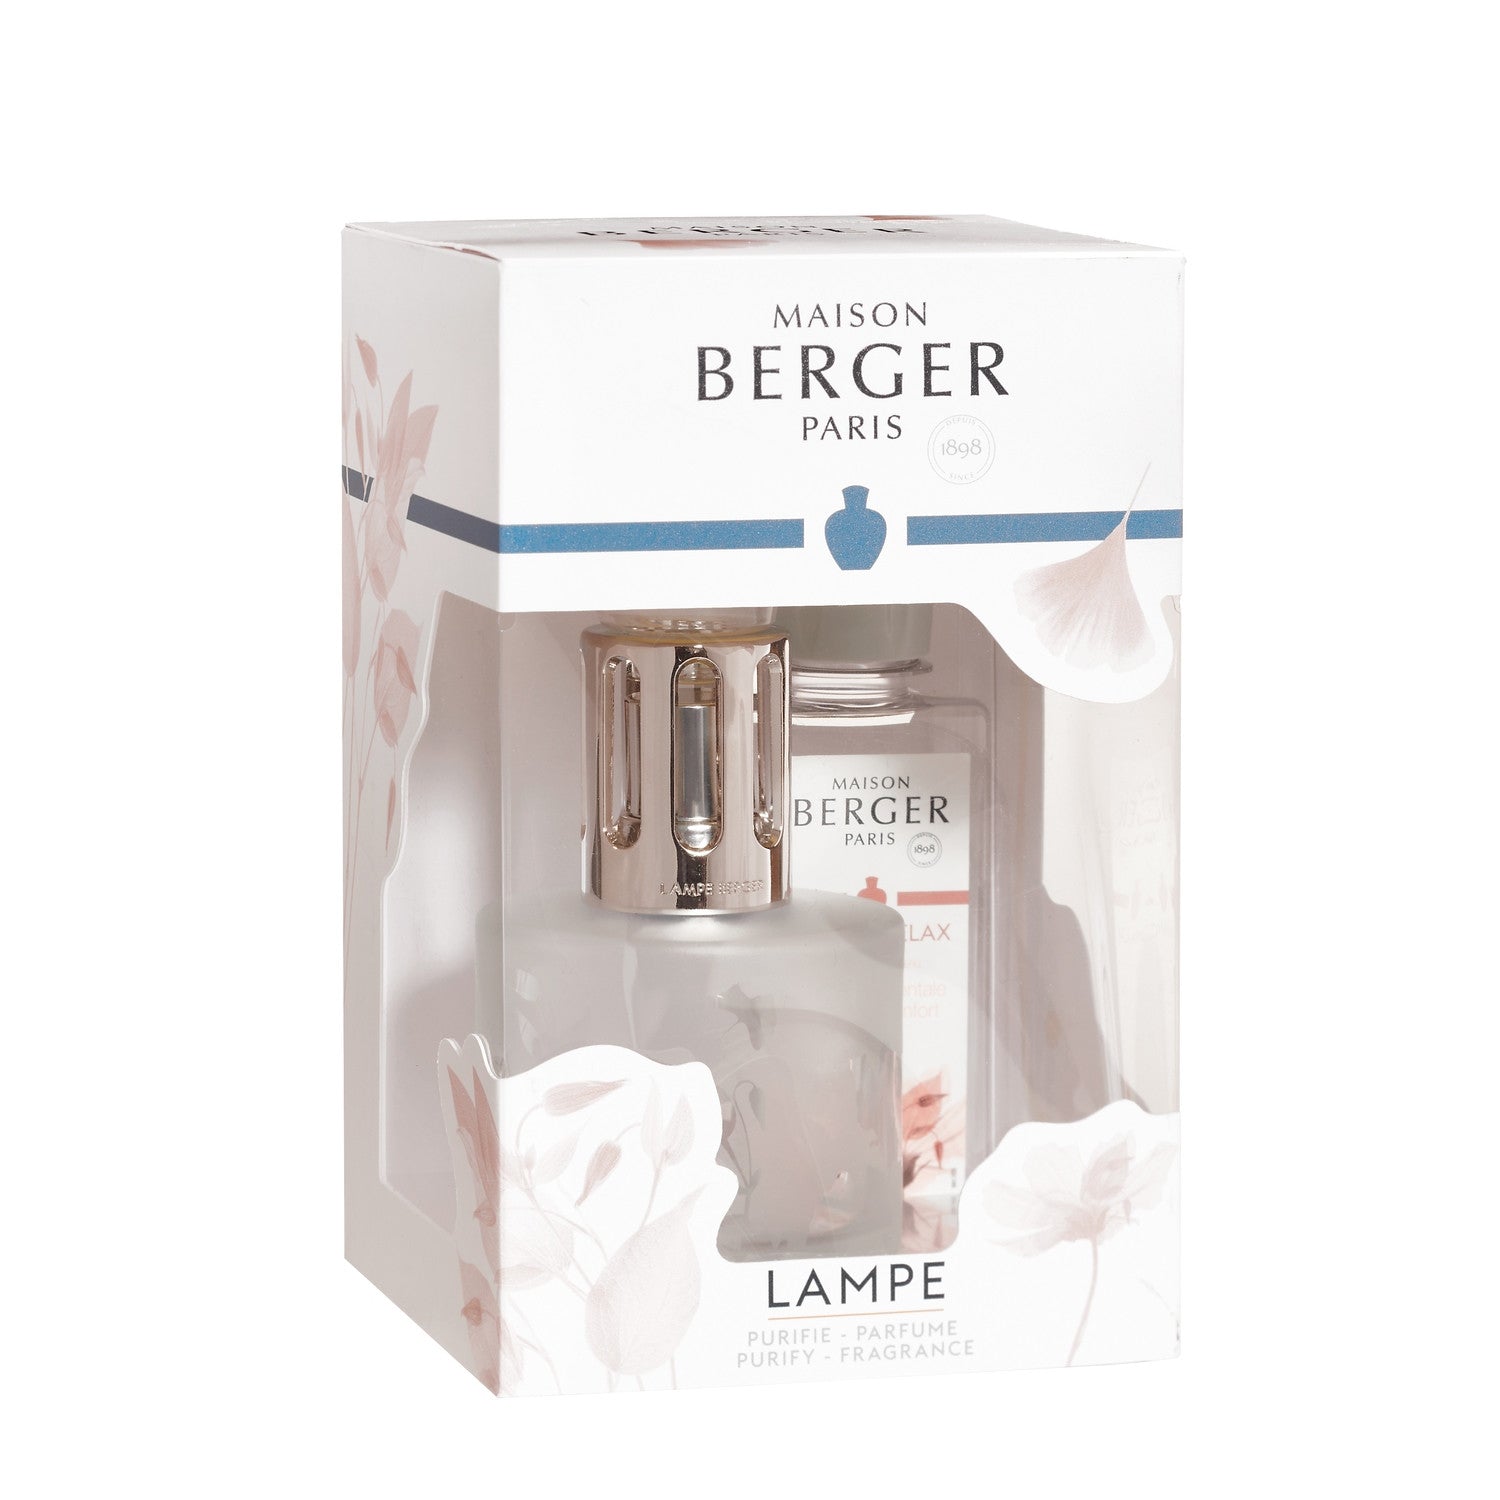 Diffusori di profumo Maison Berger Paris: prodotti e offerte